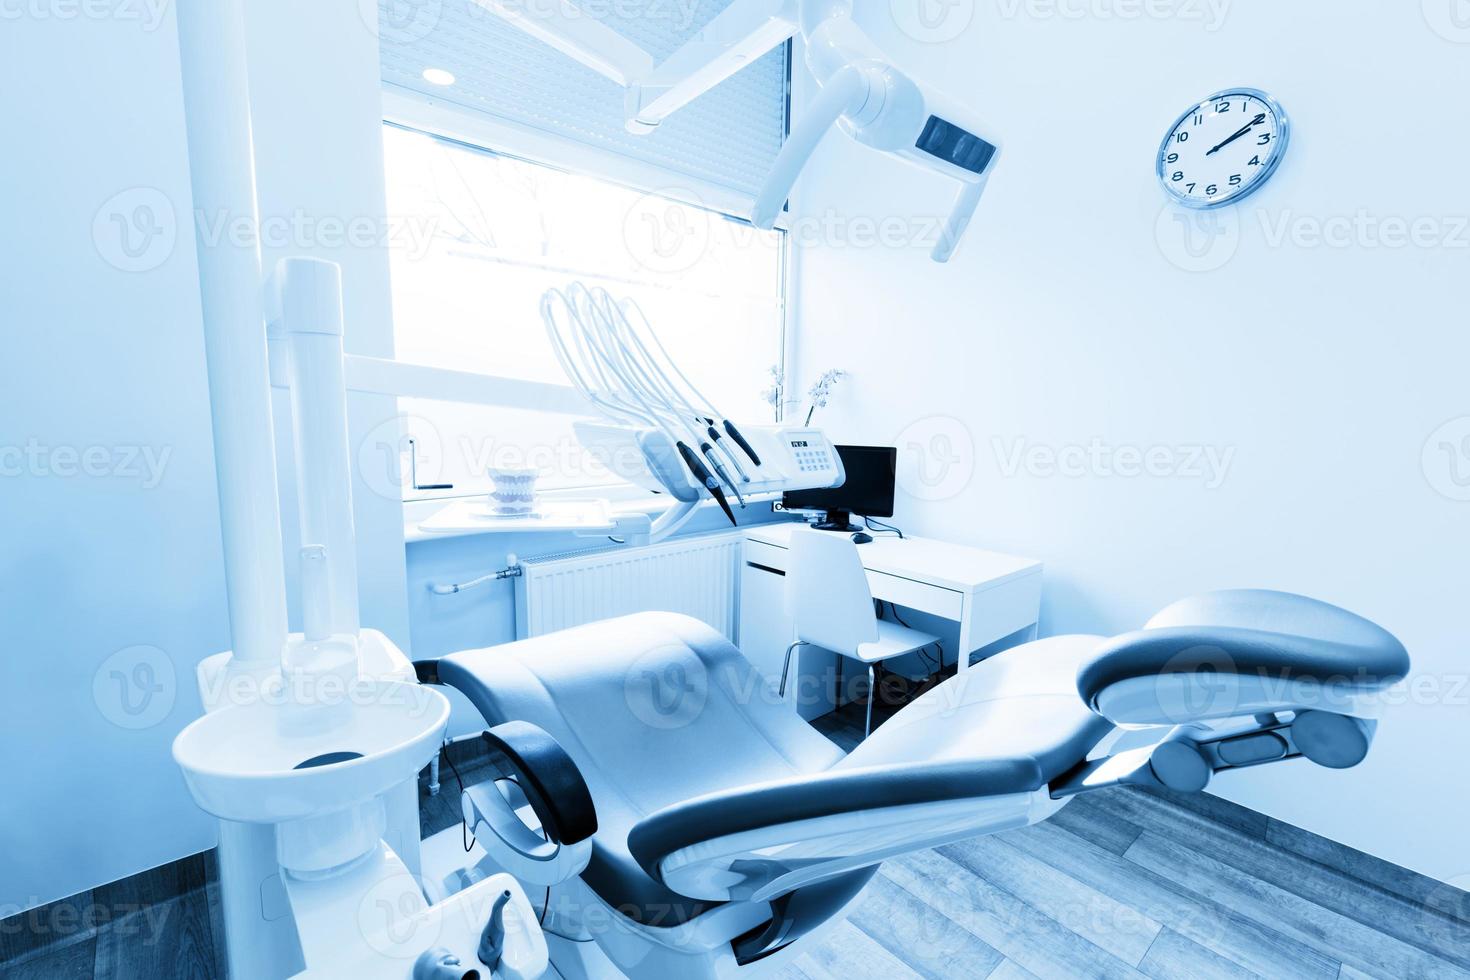 equipamentos e instrumentos odontológicos foto